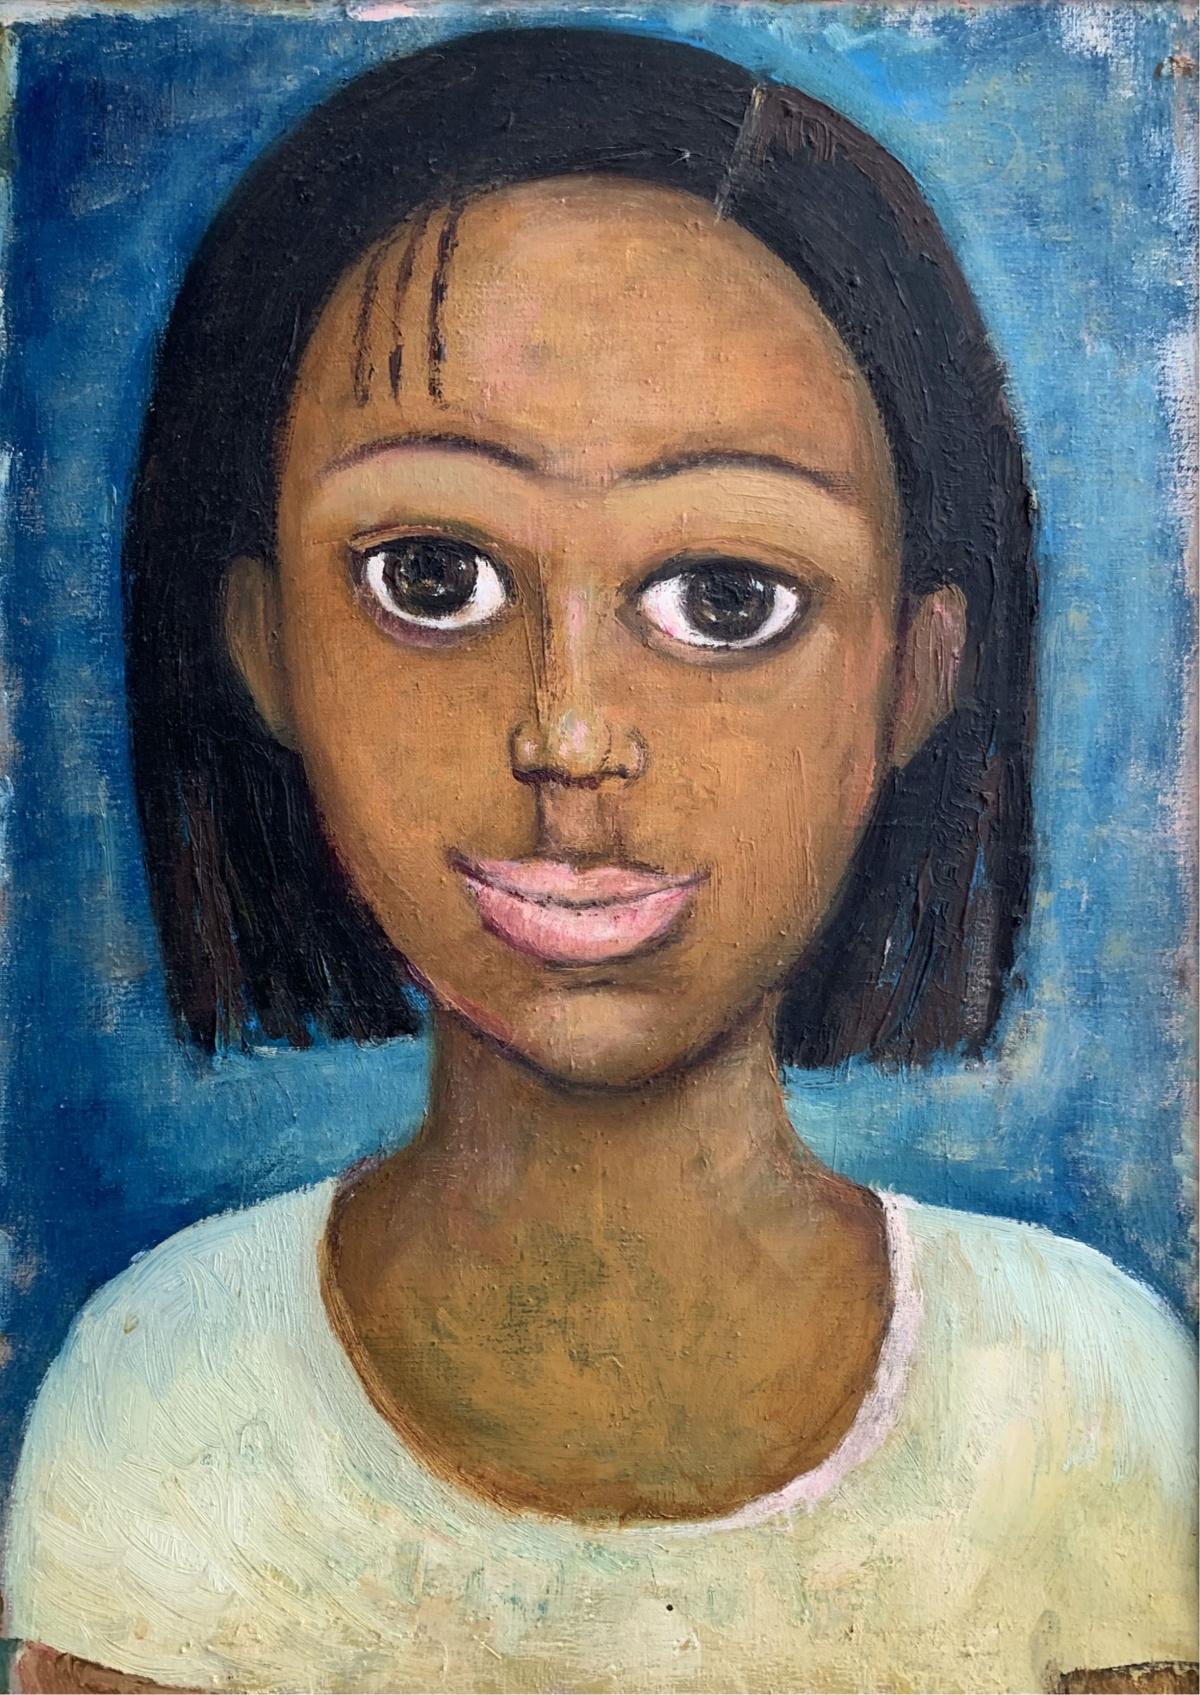 Figurative Painting Marlena Nizio - Portrait - Peinture à l'huile figurative, bleu, tons chauds, gros yeux